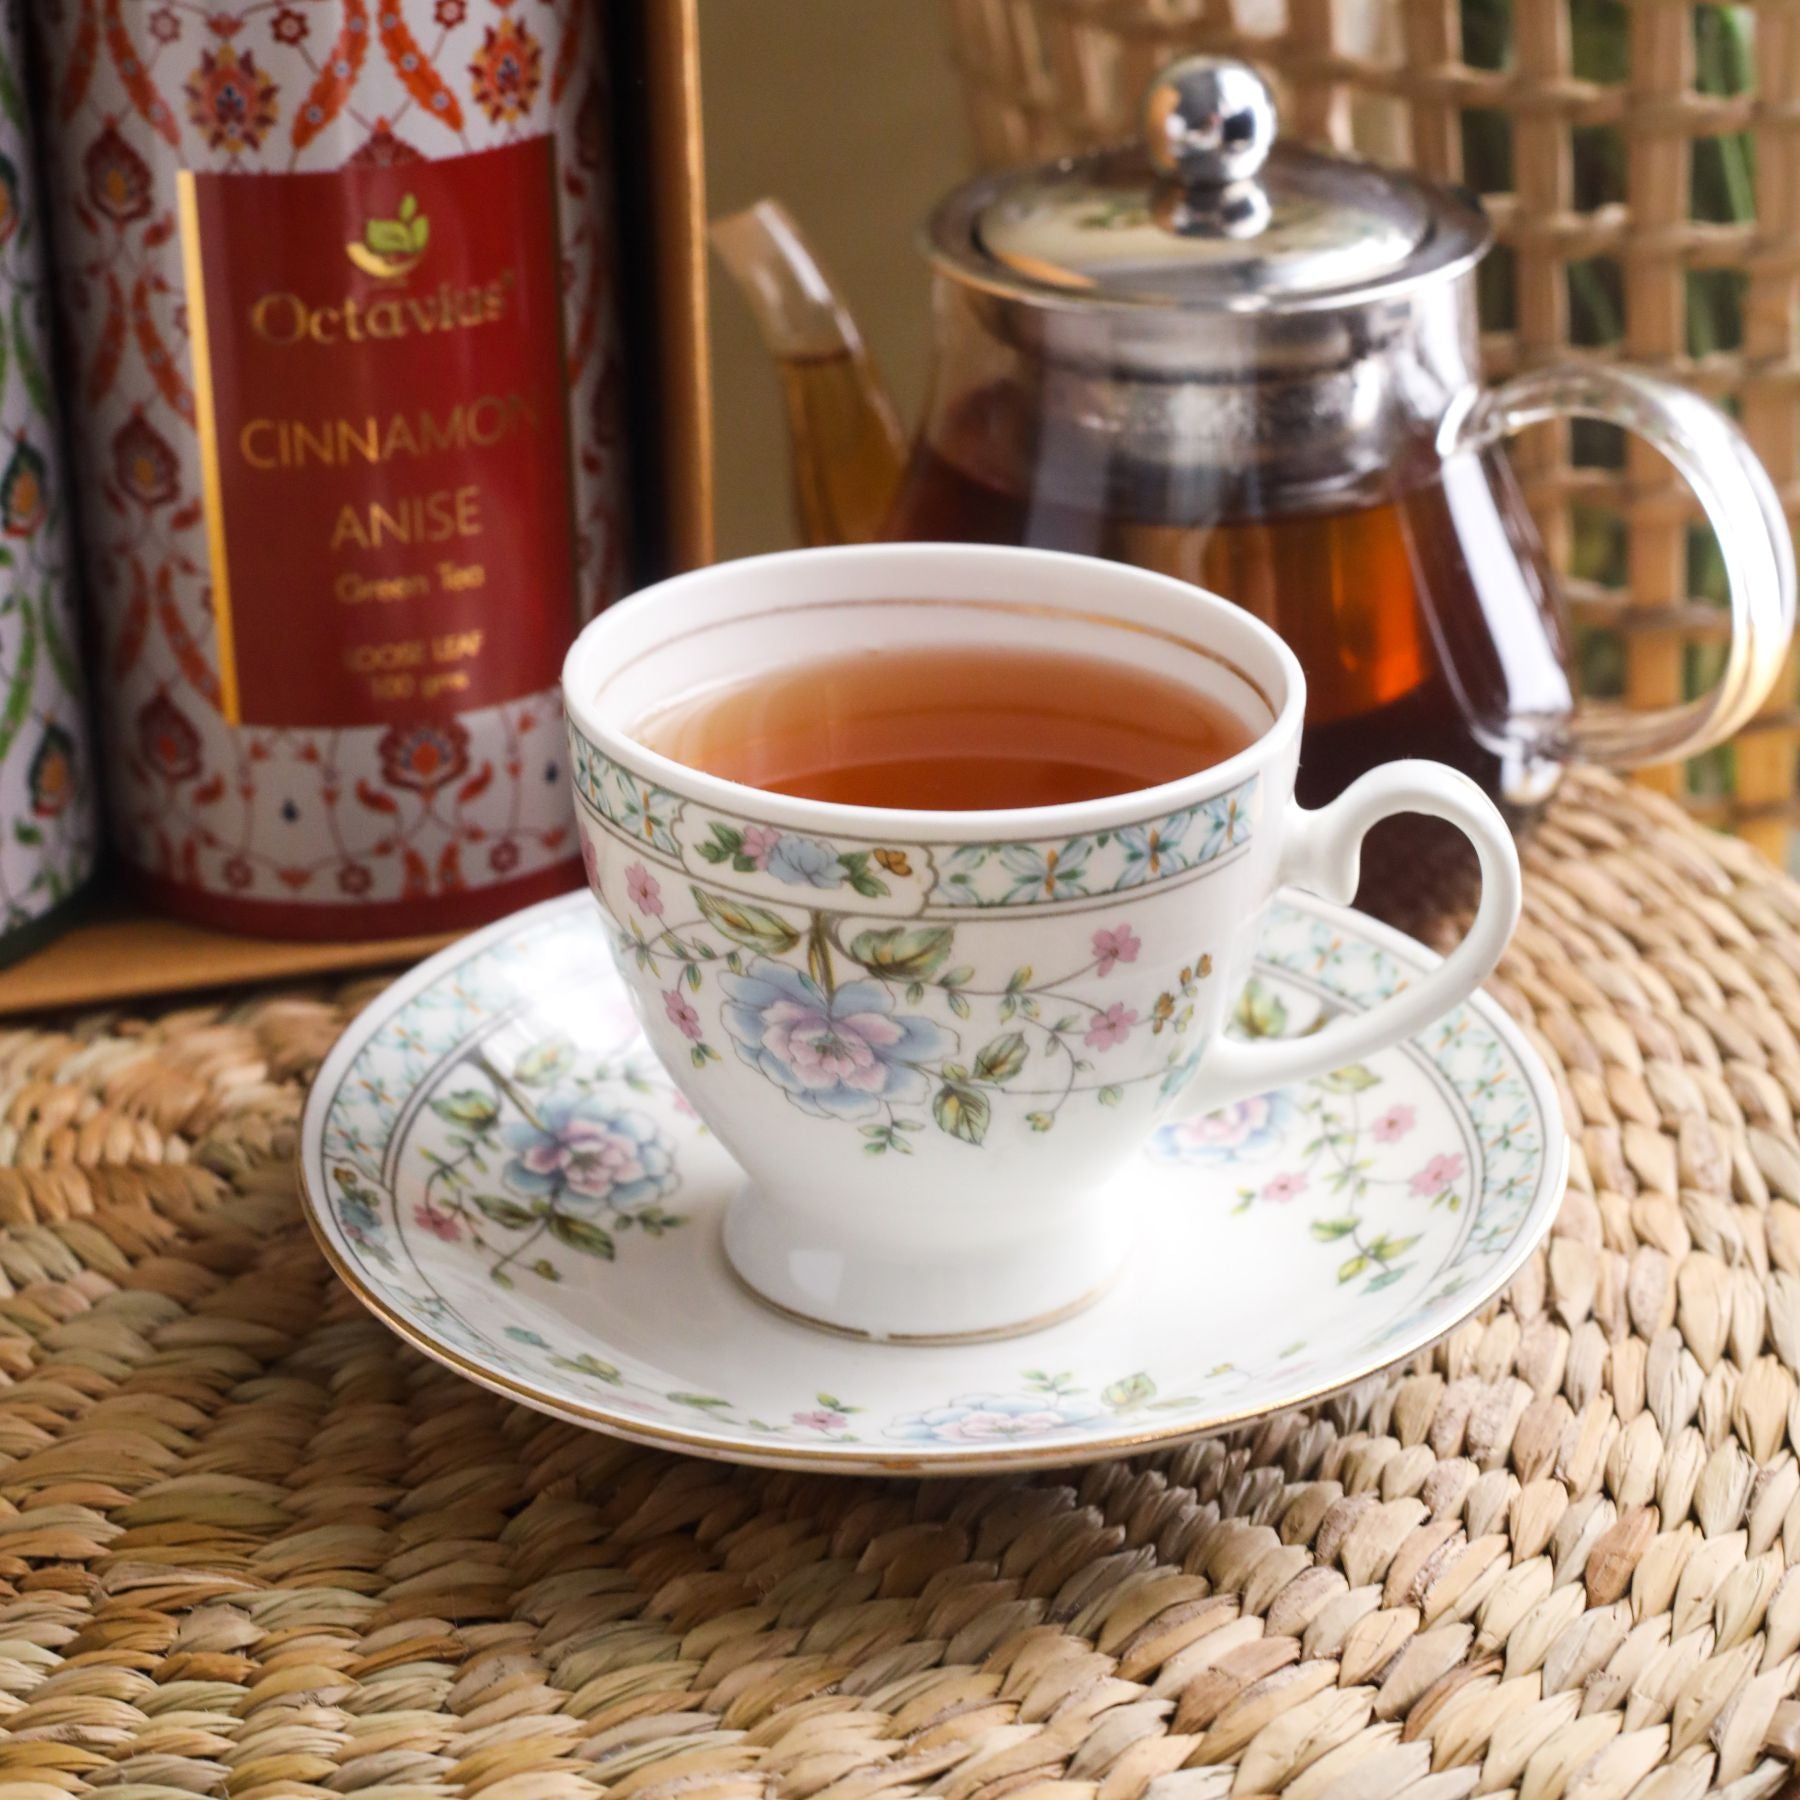 Tea Essentials-Floral Wellness (2 Wellness Green Tea Blends)